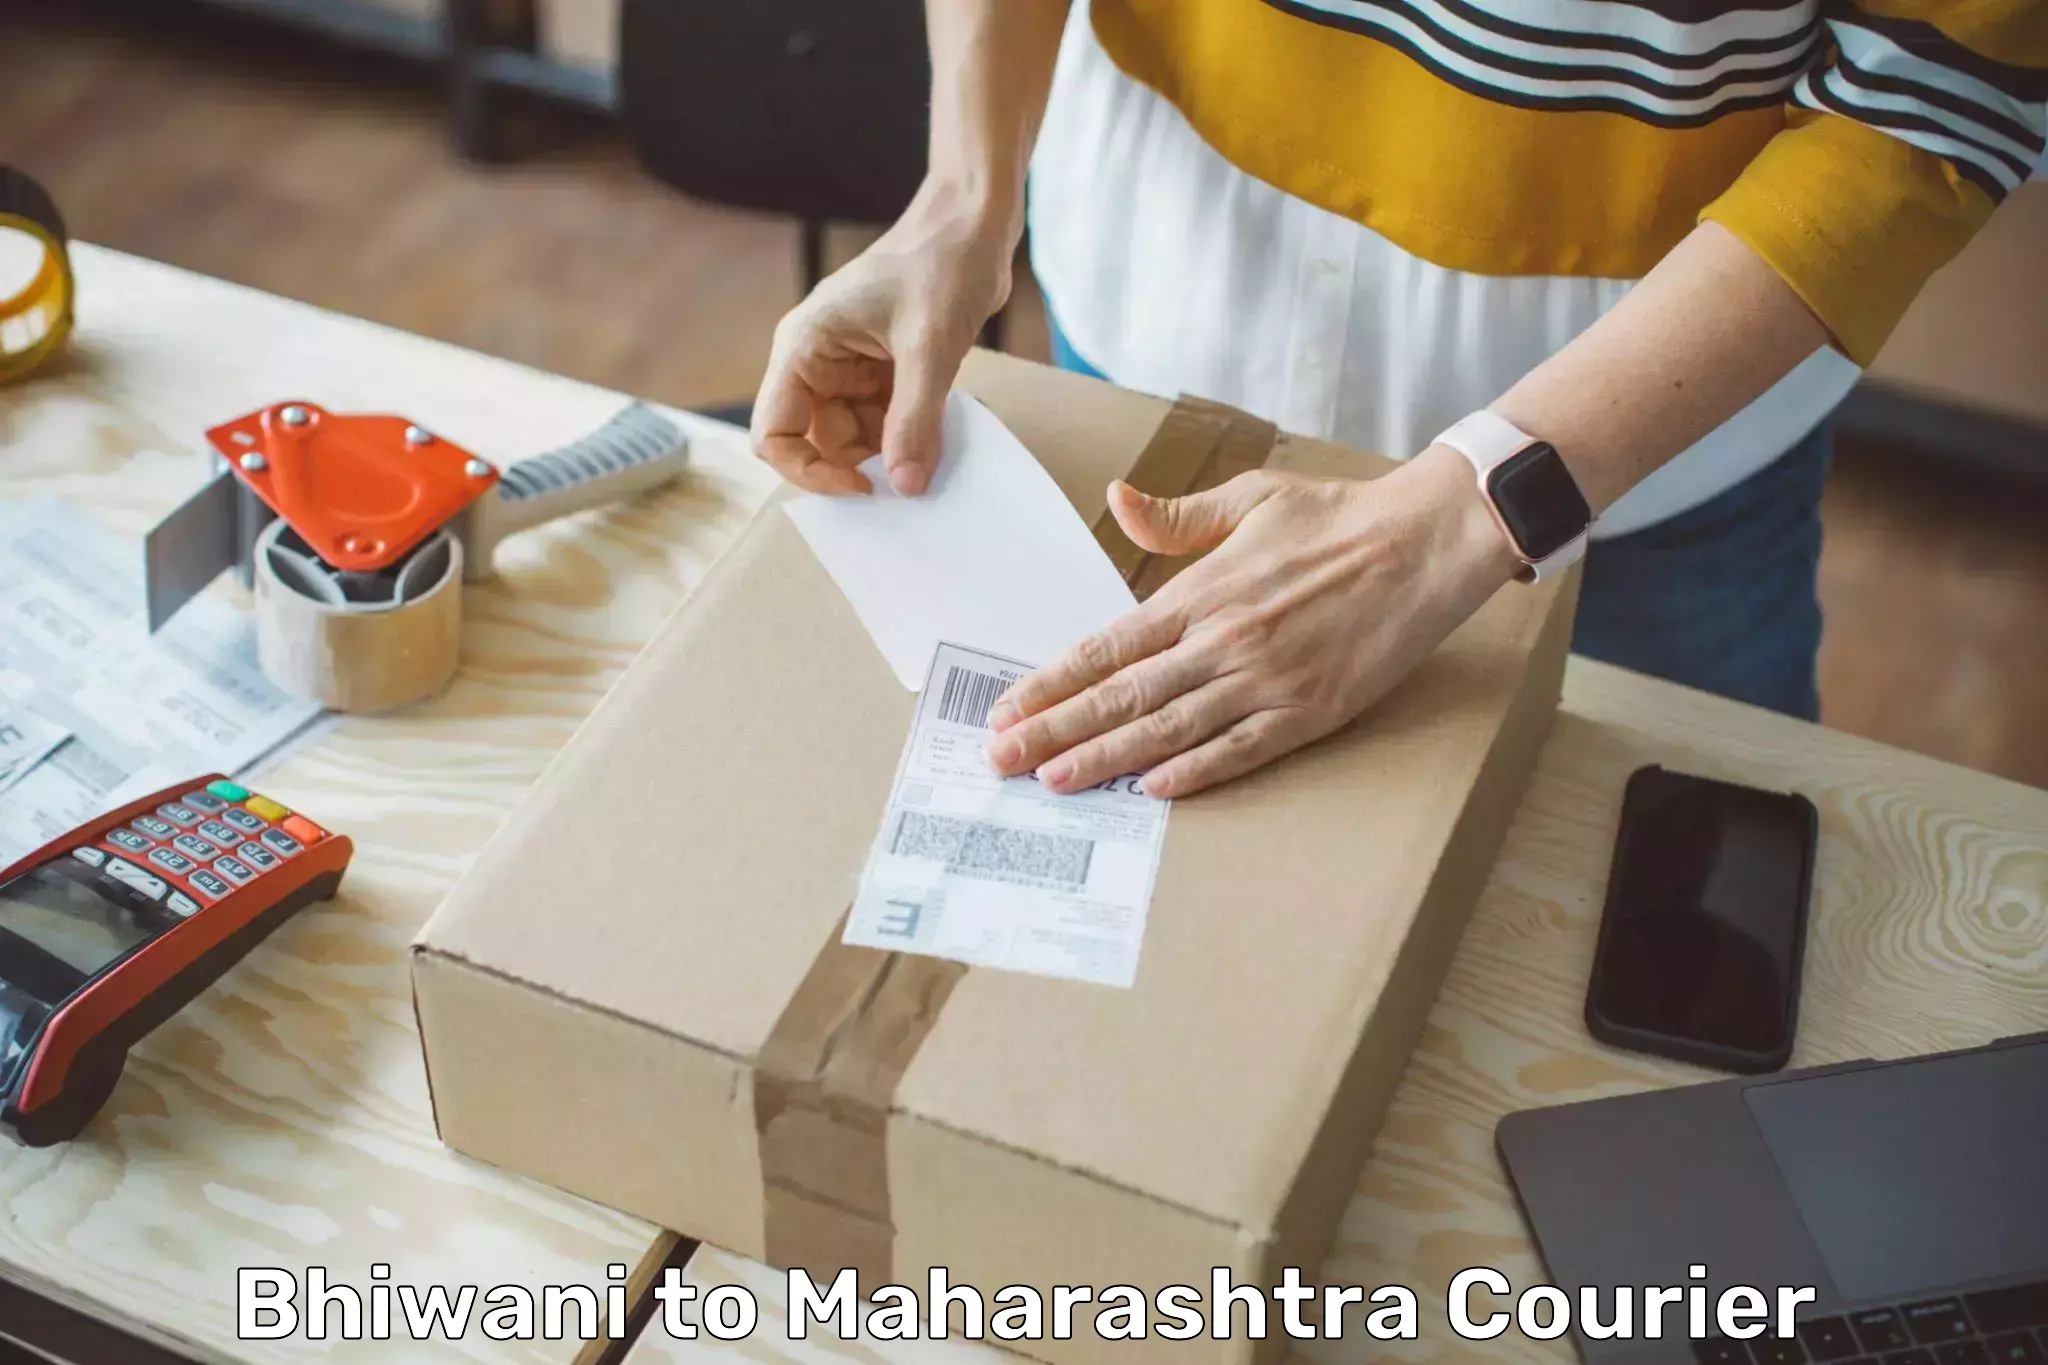 Courier service innovation Bhiwani to Maharashtra